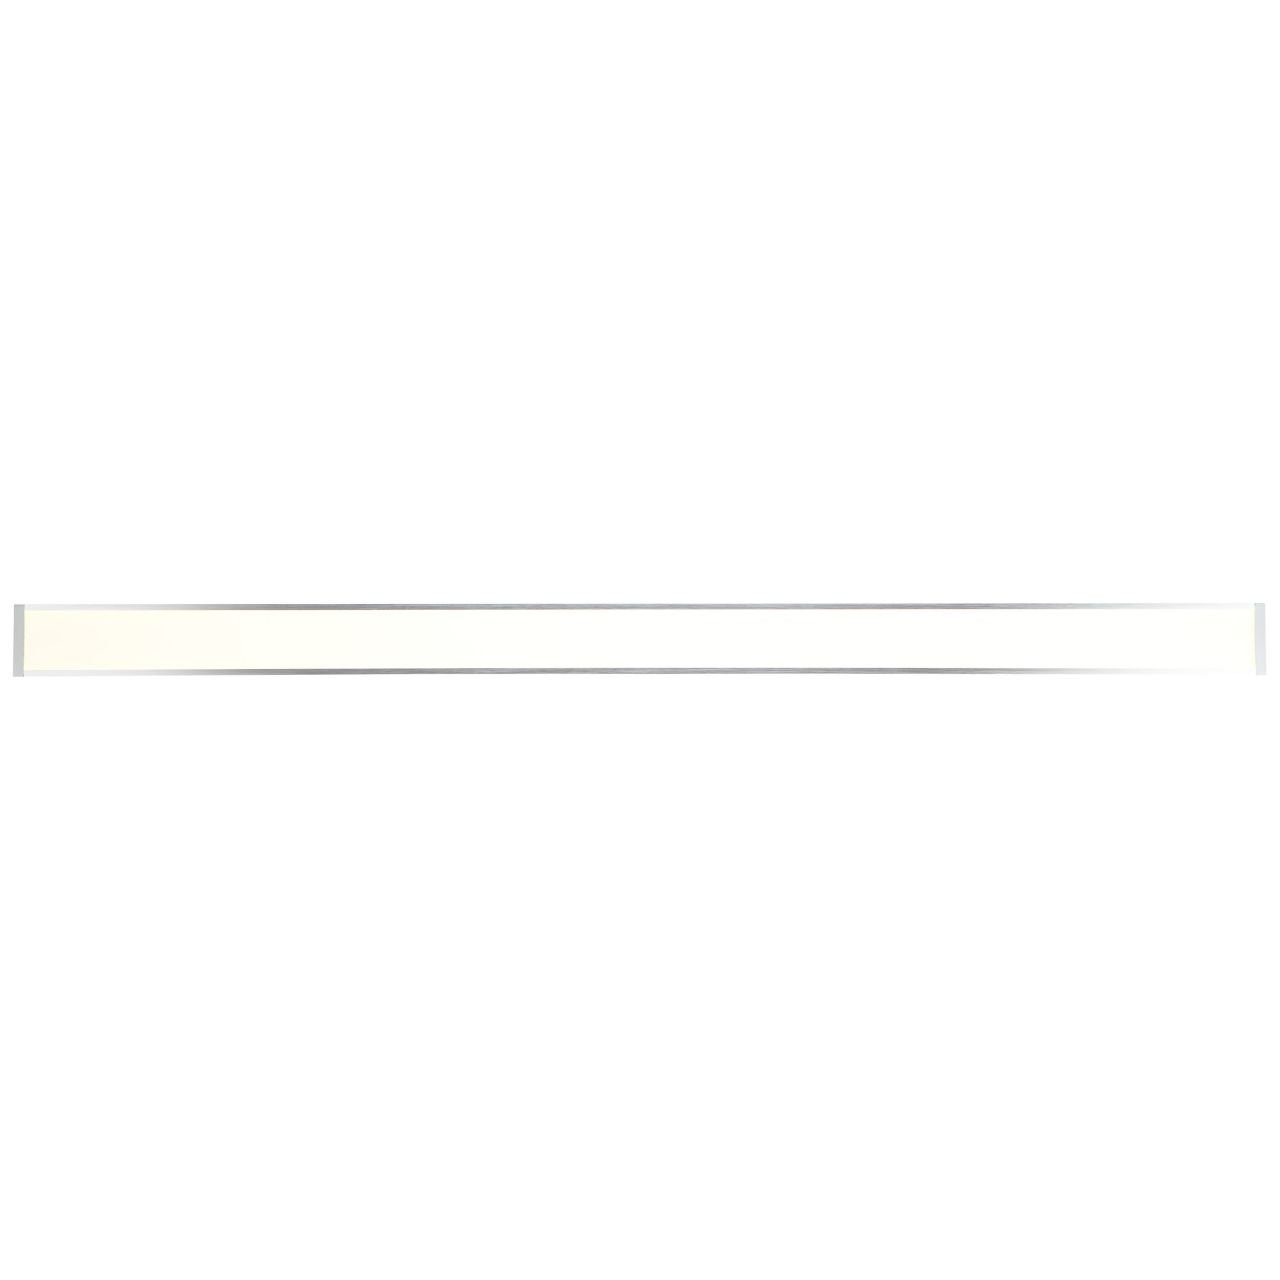 120x7cm easyDim 1x LED Brilliant Entrance 2 Aufbauleuchte Entrance, Deckenaufbau-Paneel Lampe alu/weiß